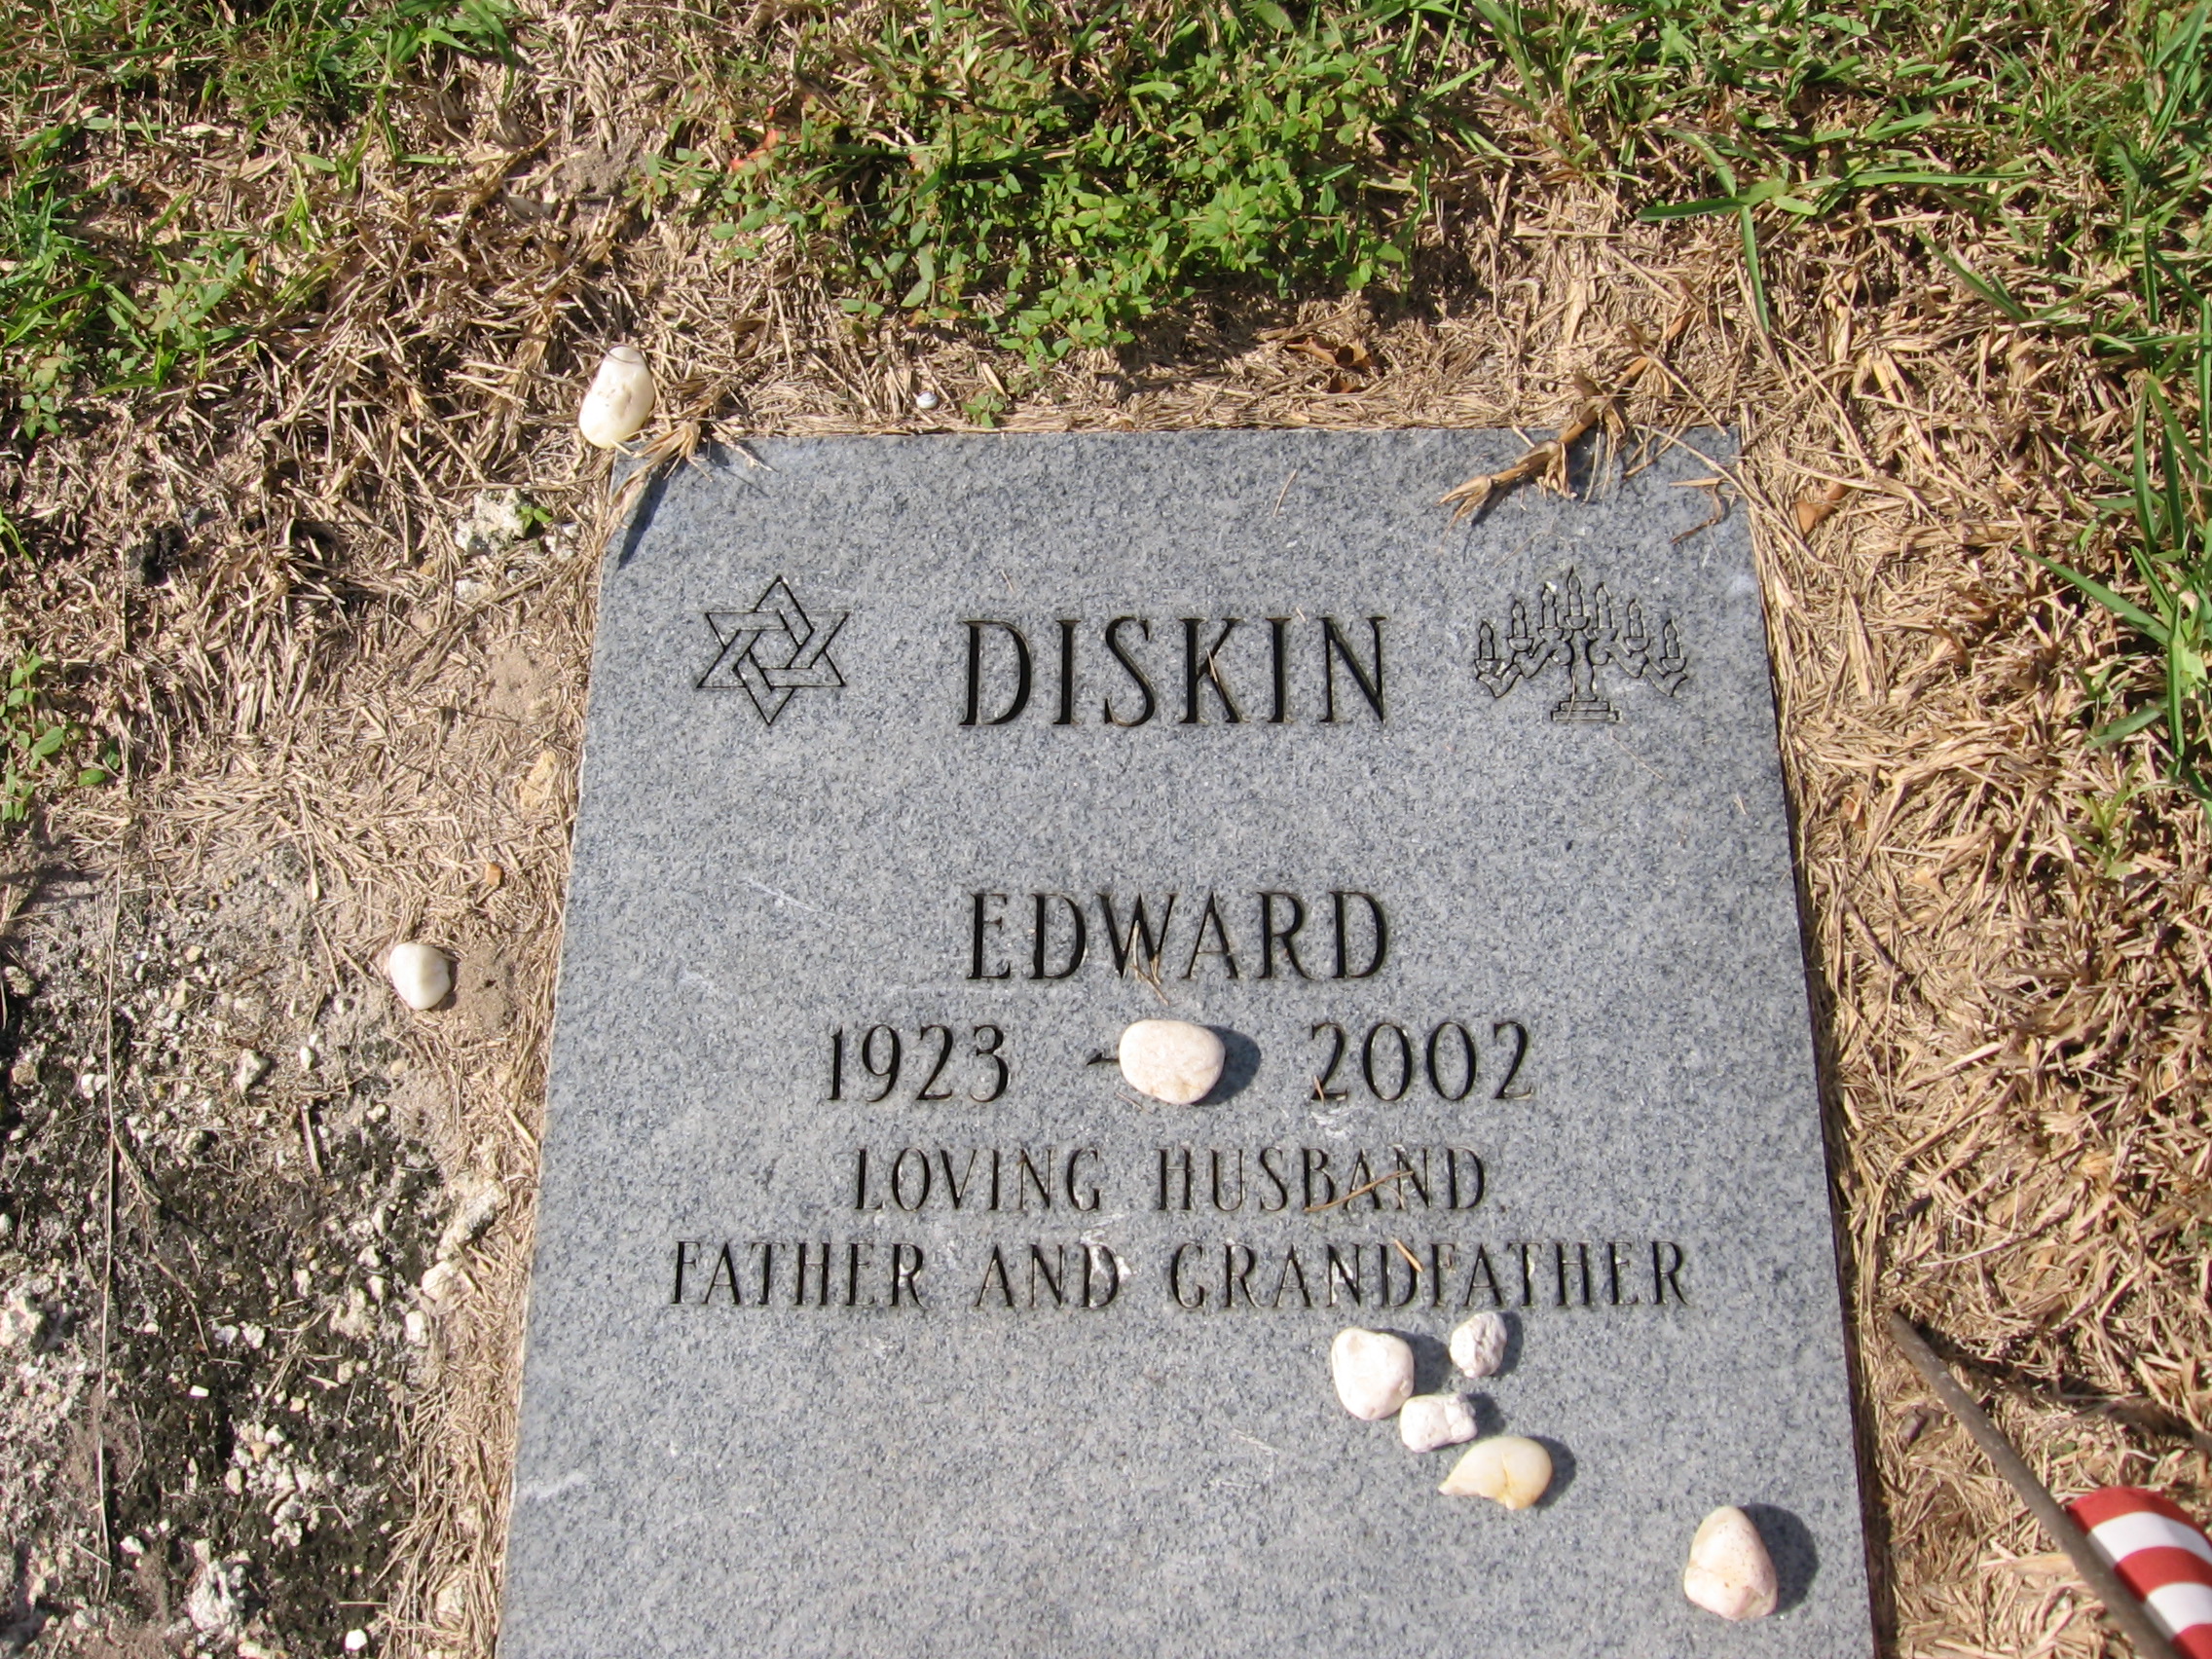 Edward Diskin